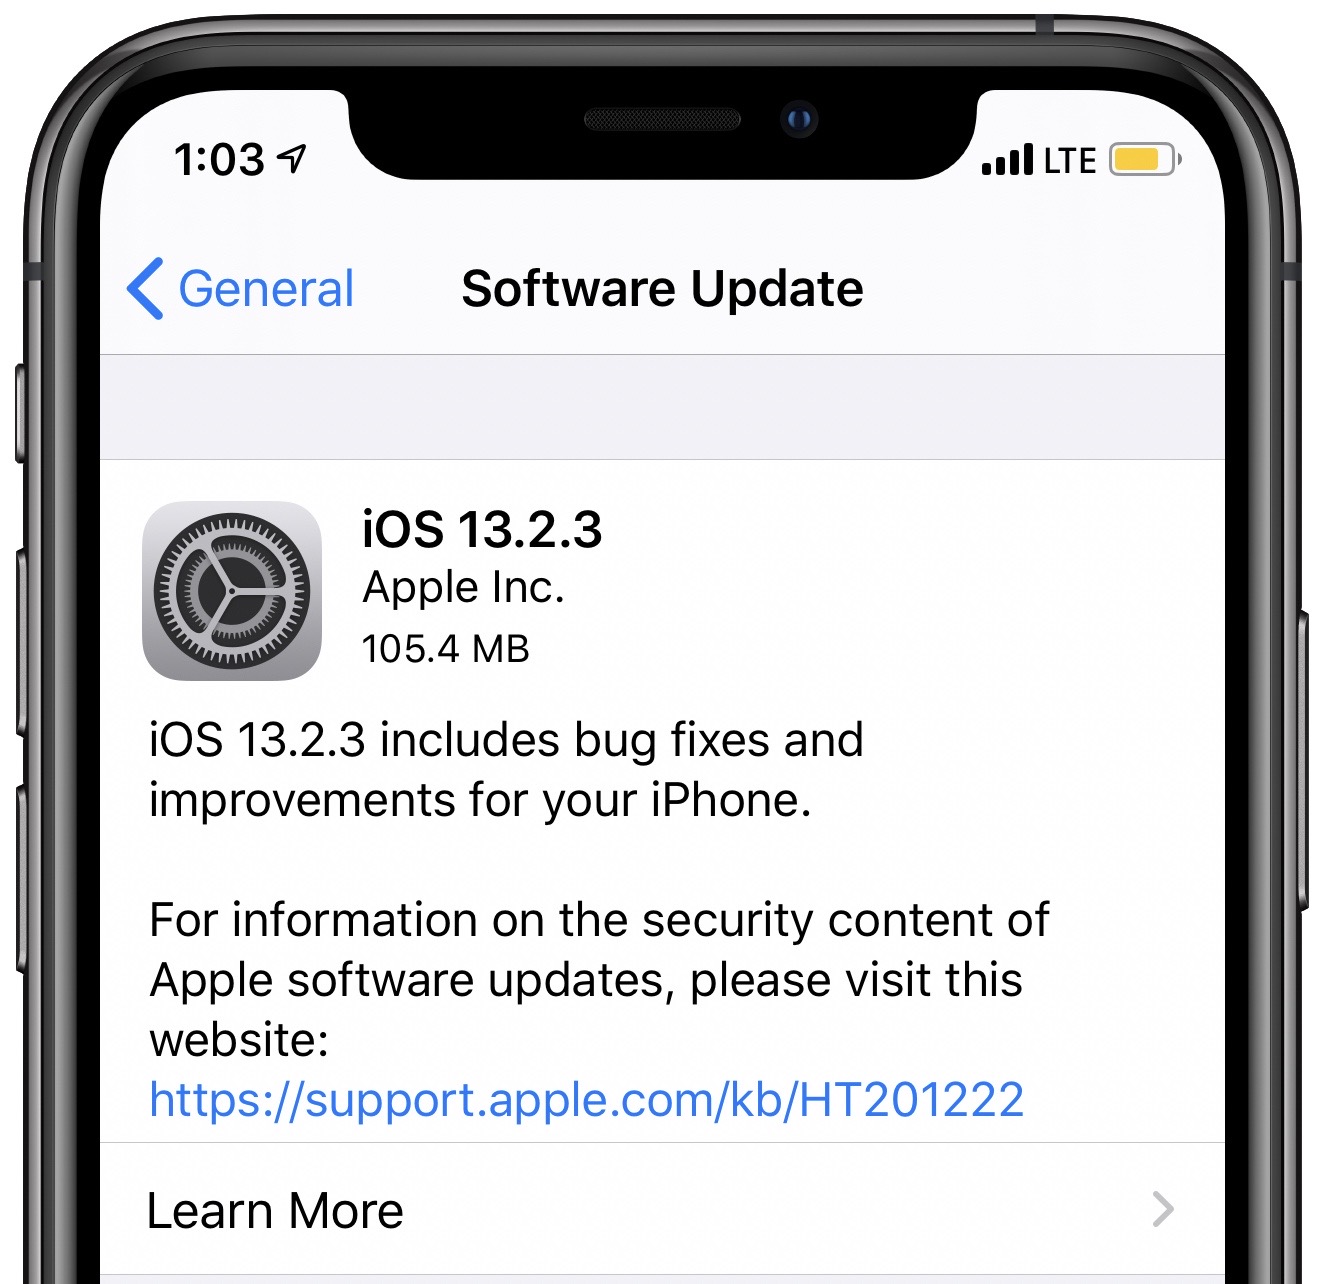 Vậy là bạn đang gặp phải lỗi trên iOS 13.2.3 phải không? Đừng lo, hãy xem ngay hình ảnh về việc sửa lỗi trên hệ điều hành này để khắc phục vấn đề của mình và có trải nghiệm tốt hơn trên điện thoại của bạn nhé! 